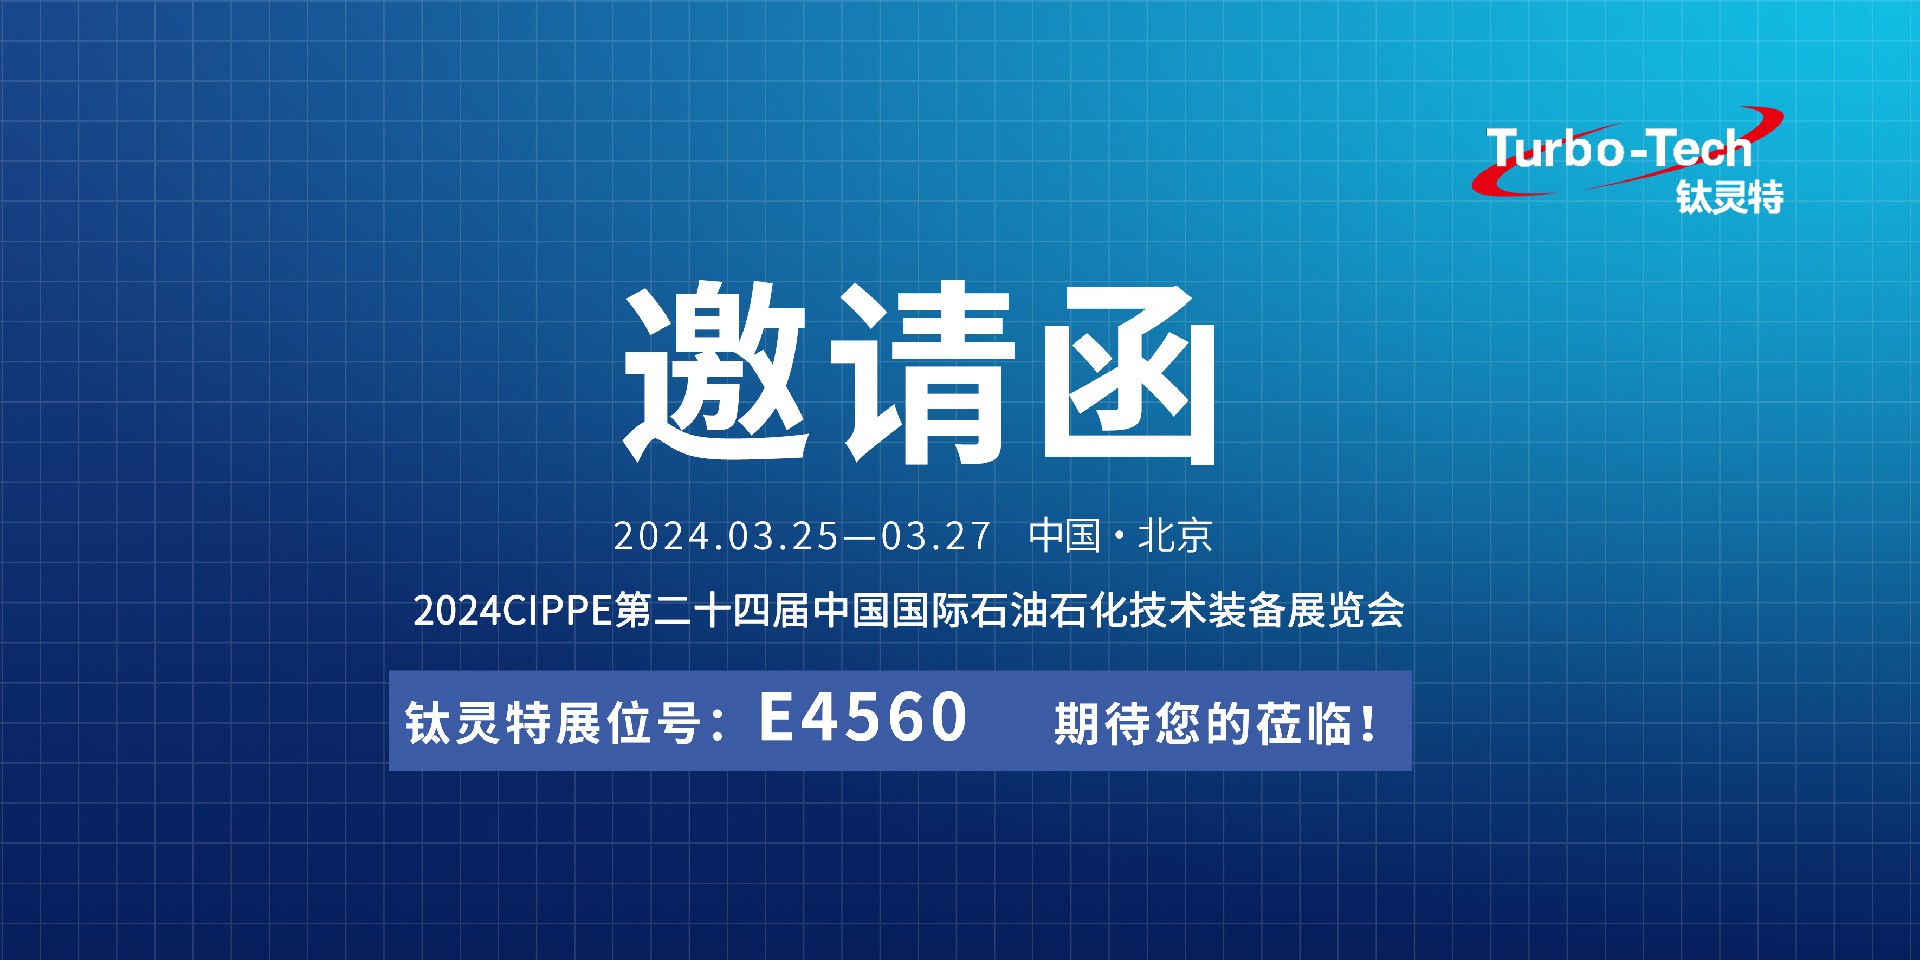 相约北京，钛灵特诚邀您莅临CIPPE第二十四届石油石化技术装备展览会